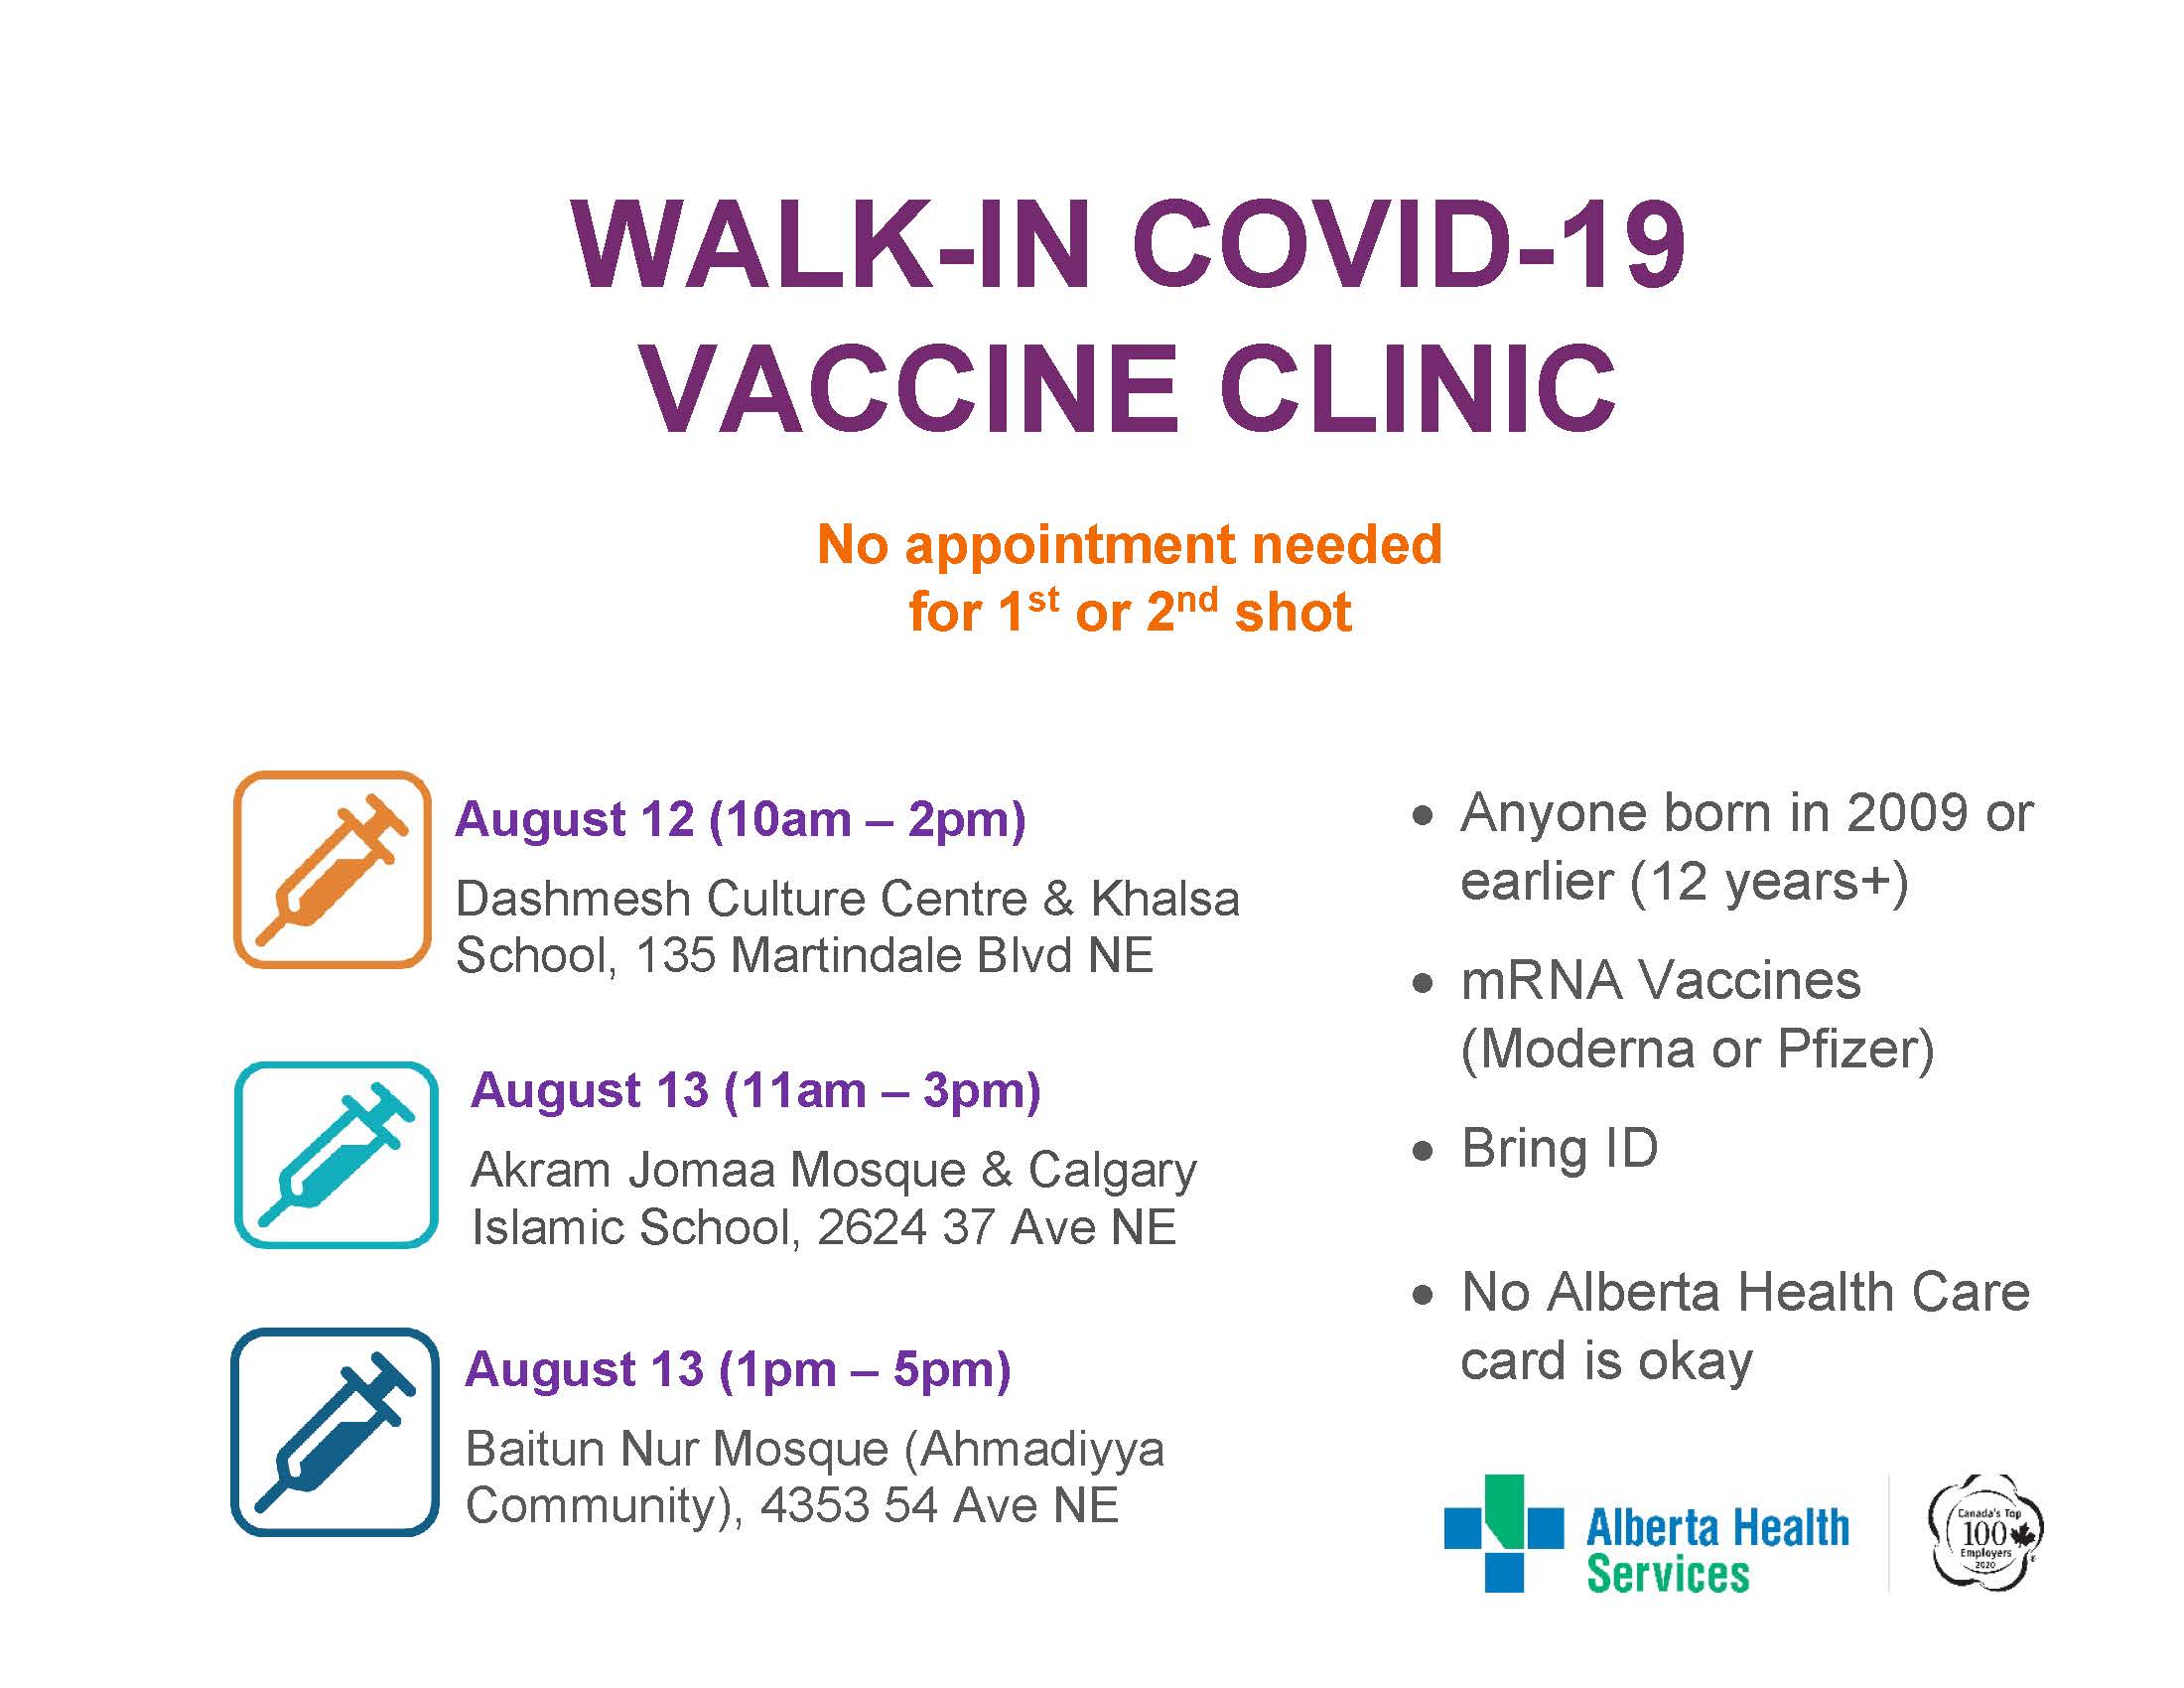 Walk-in COVID-19 Vaccine Clinics